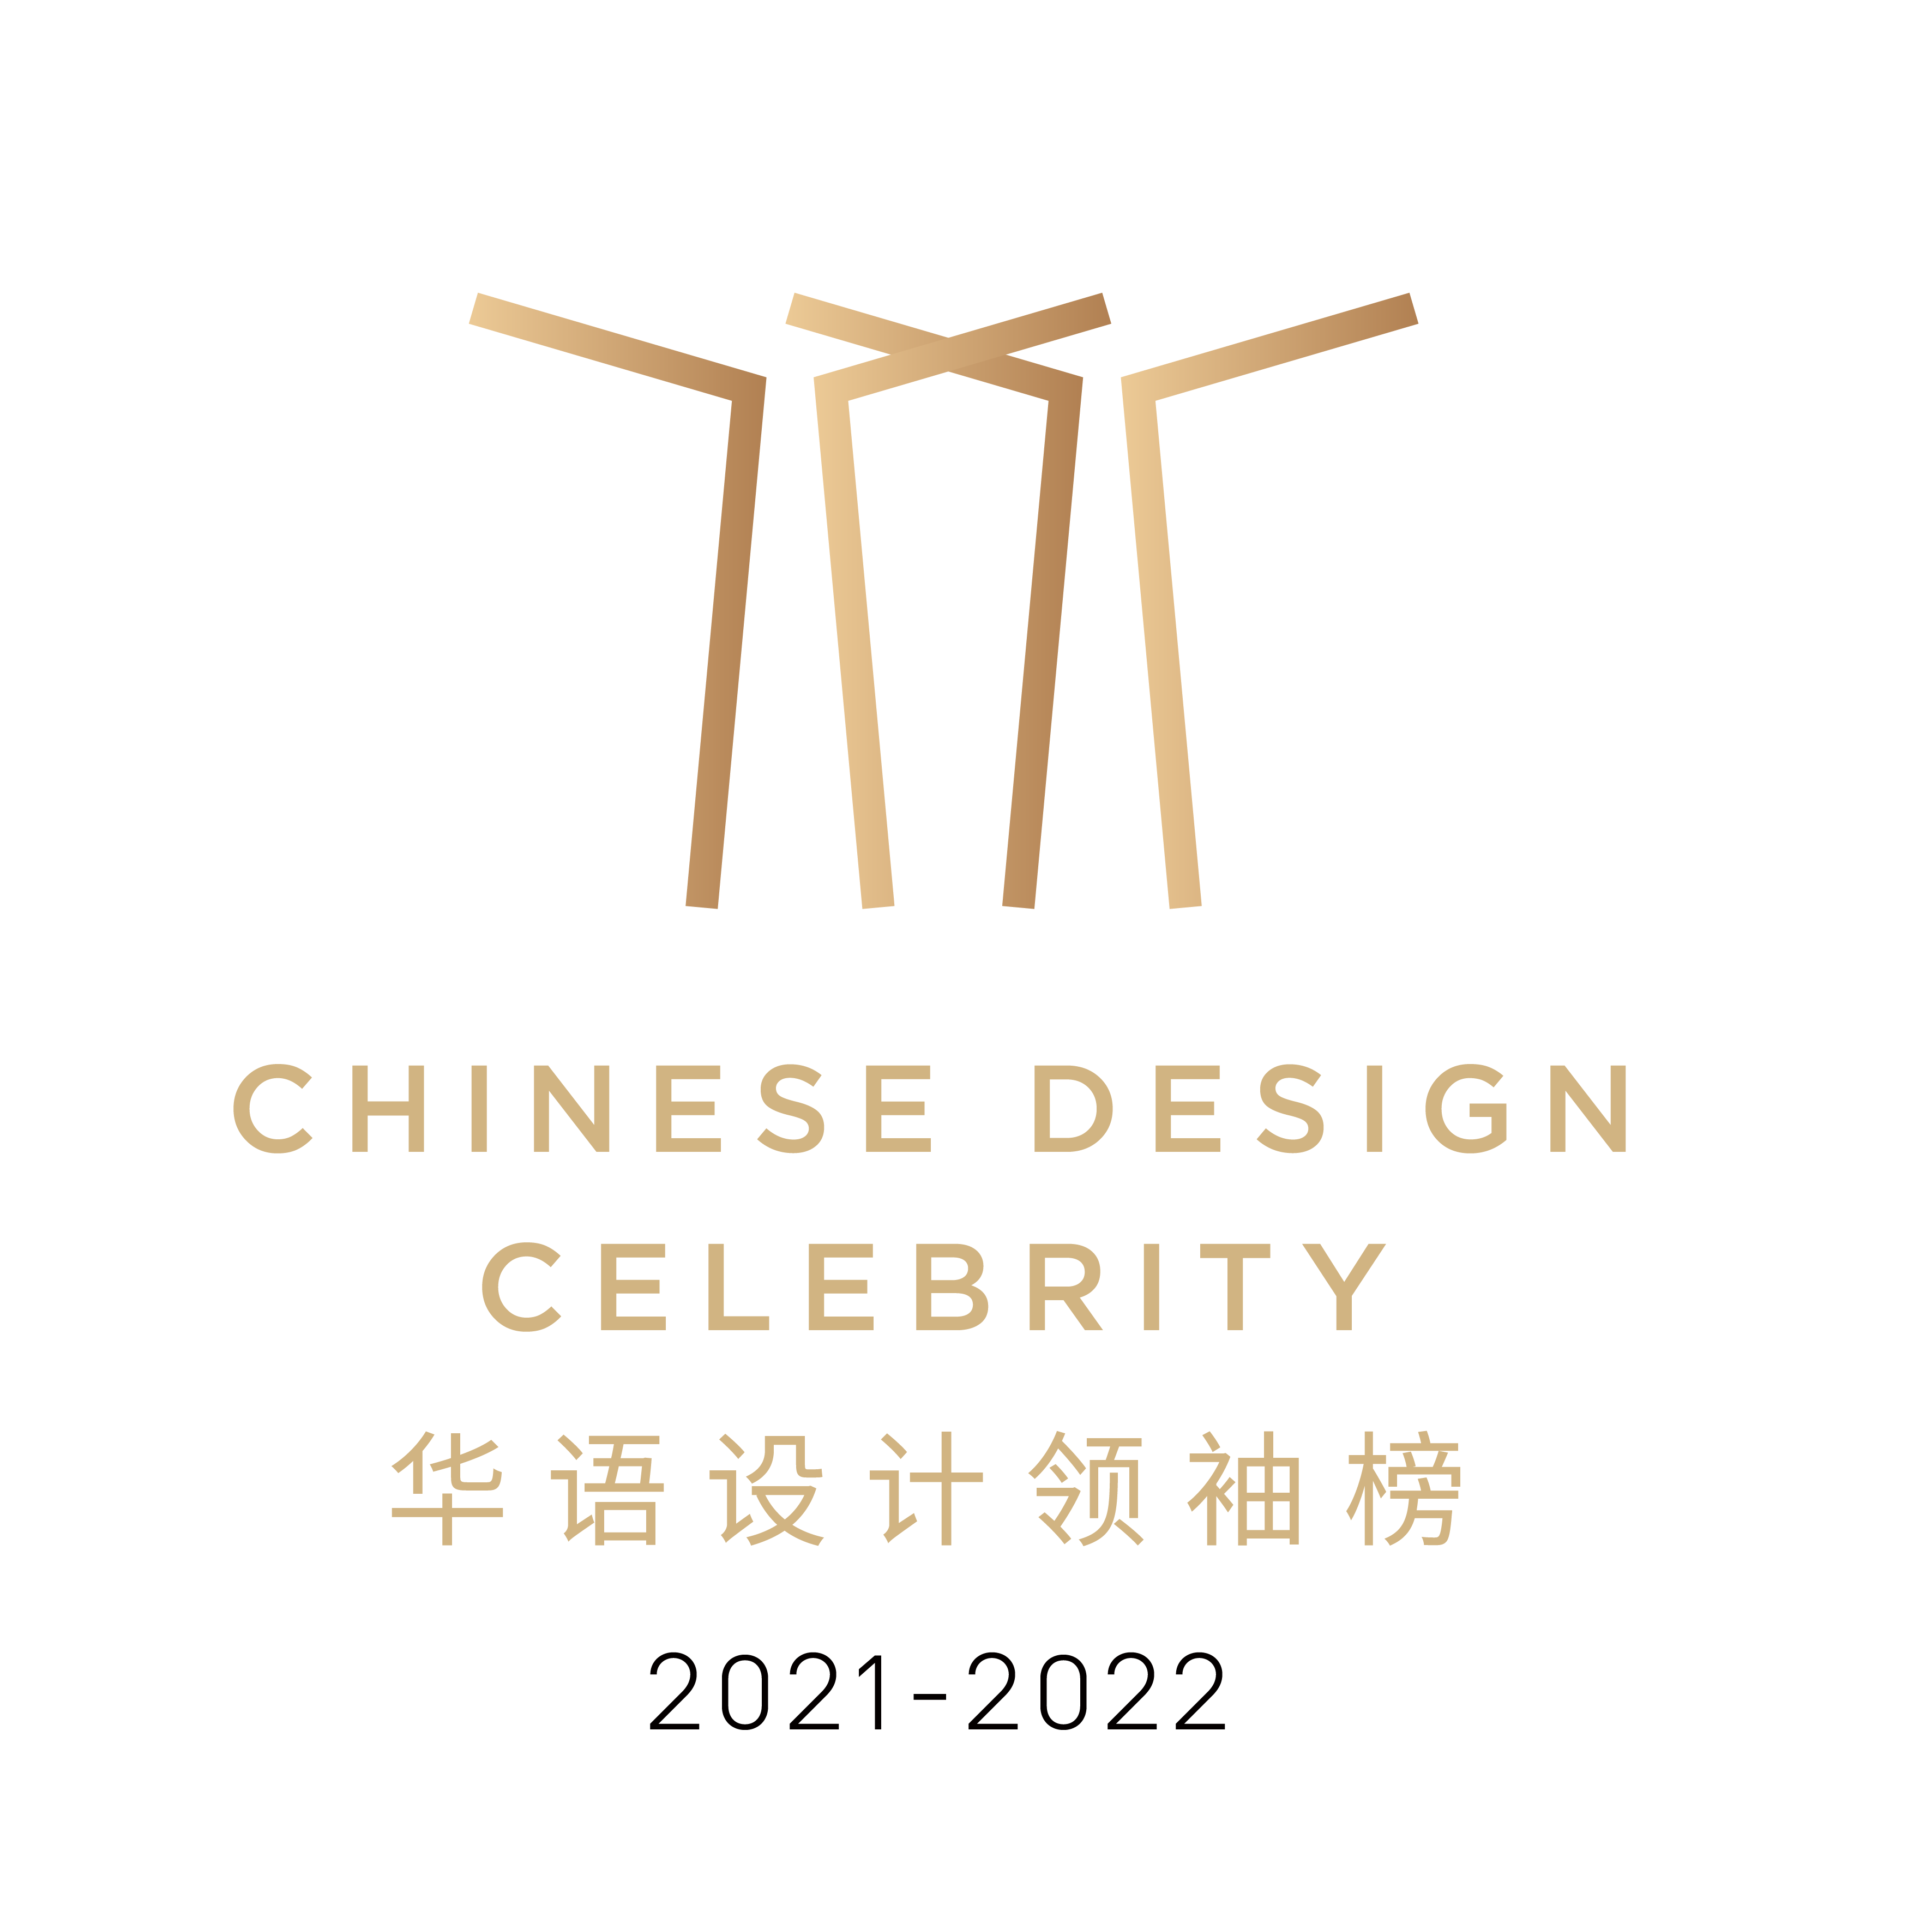 2021-2022年度「致敬華語領袖榜」百大卓越設計人物獎